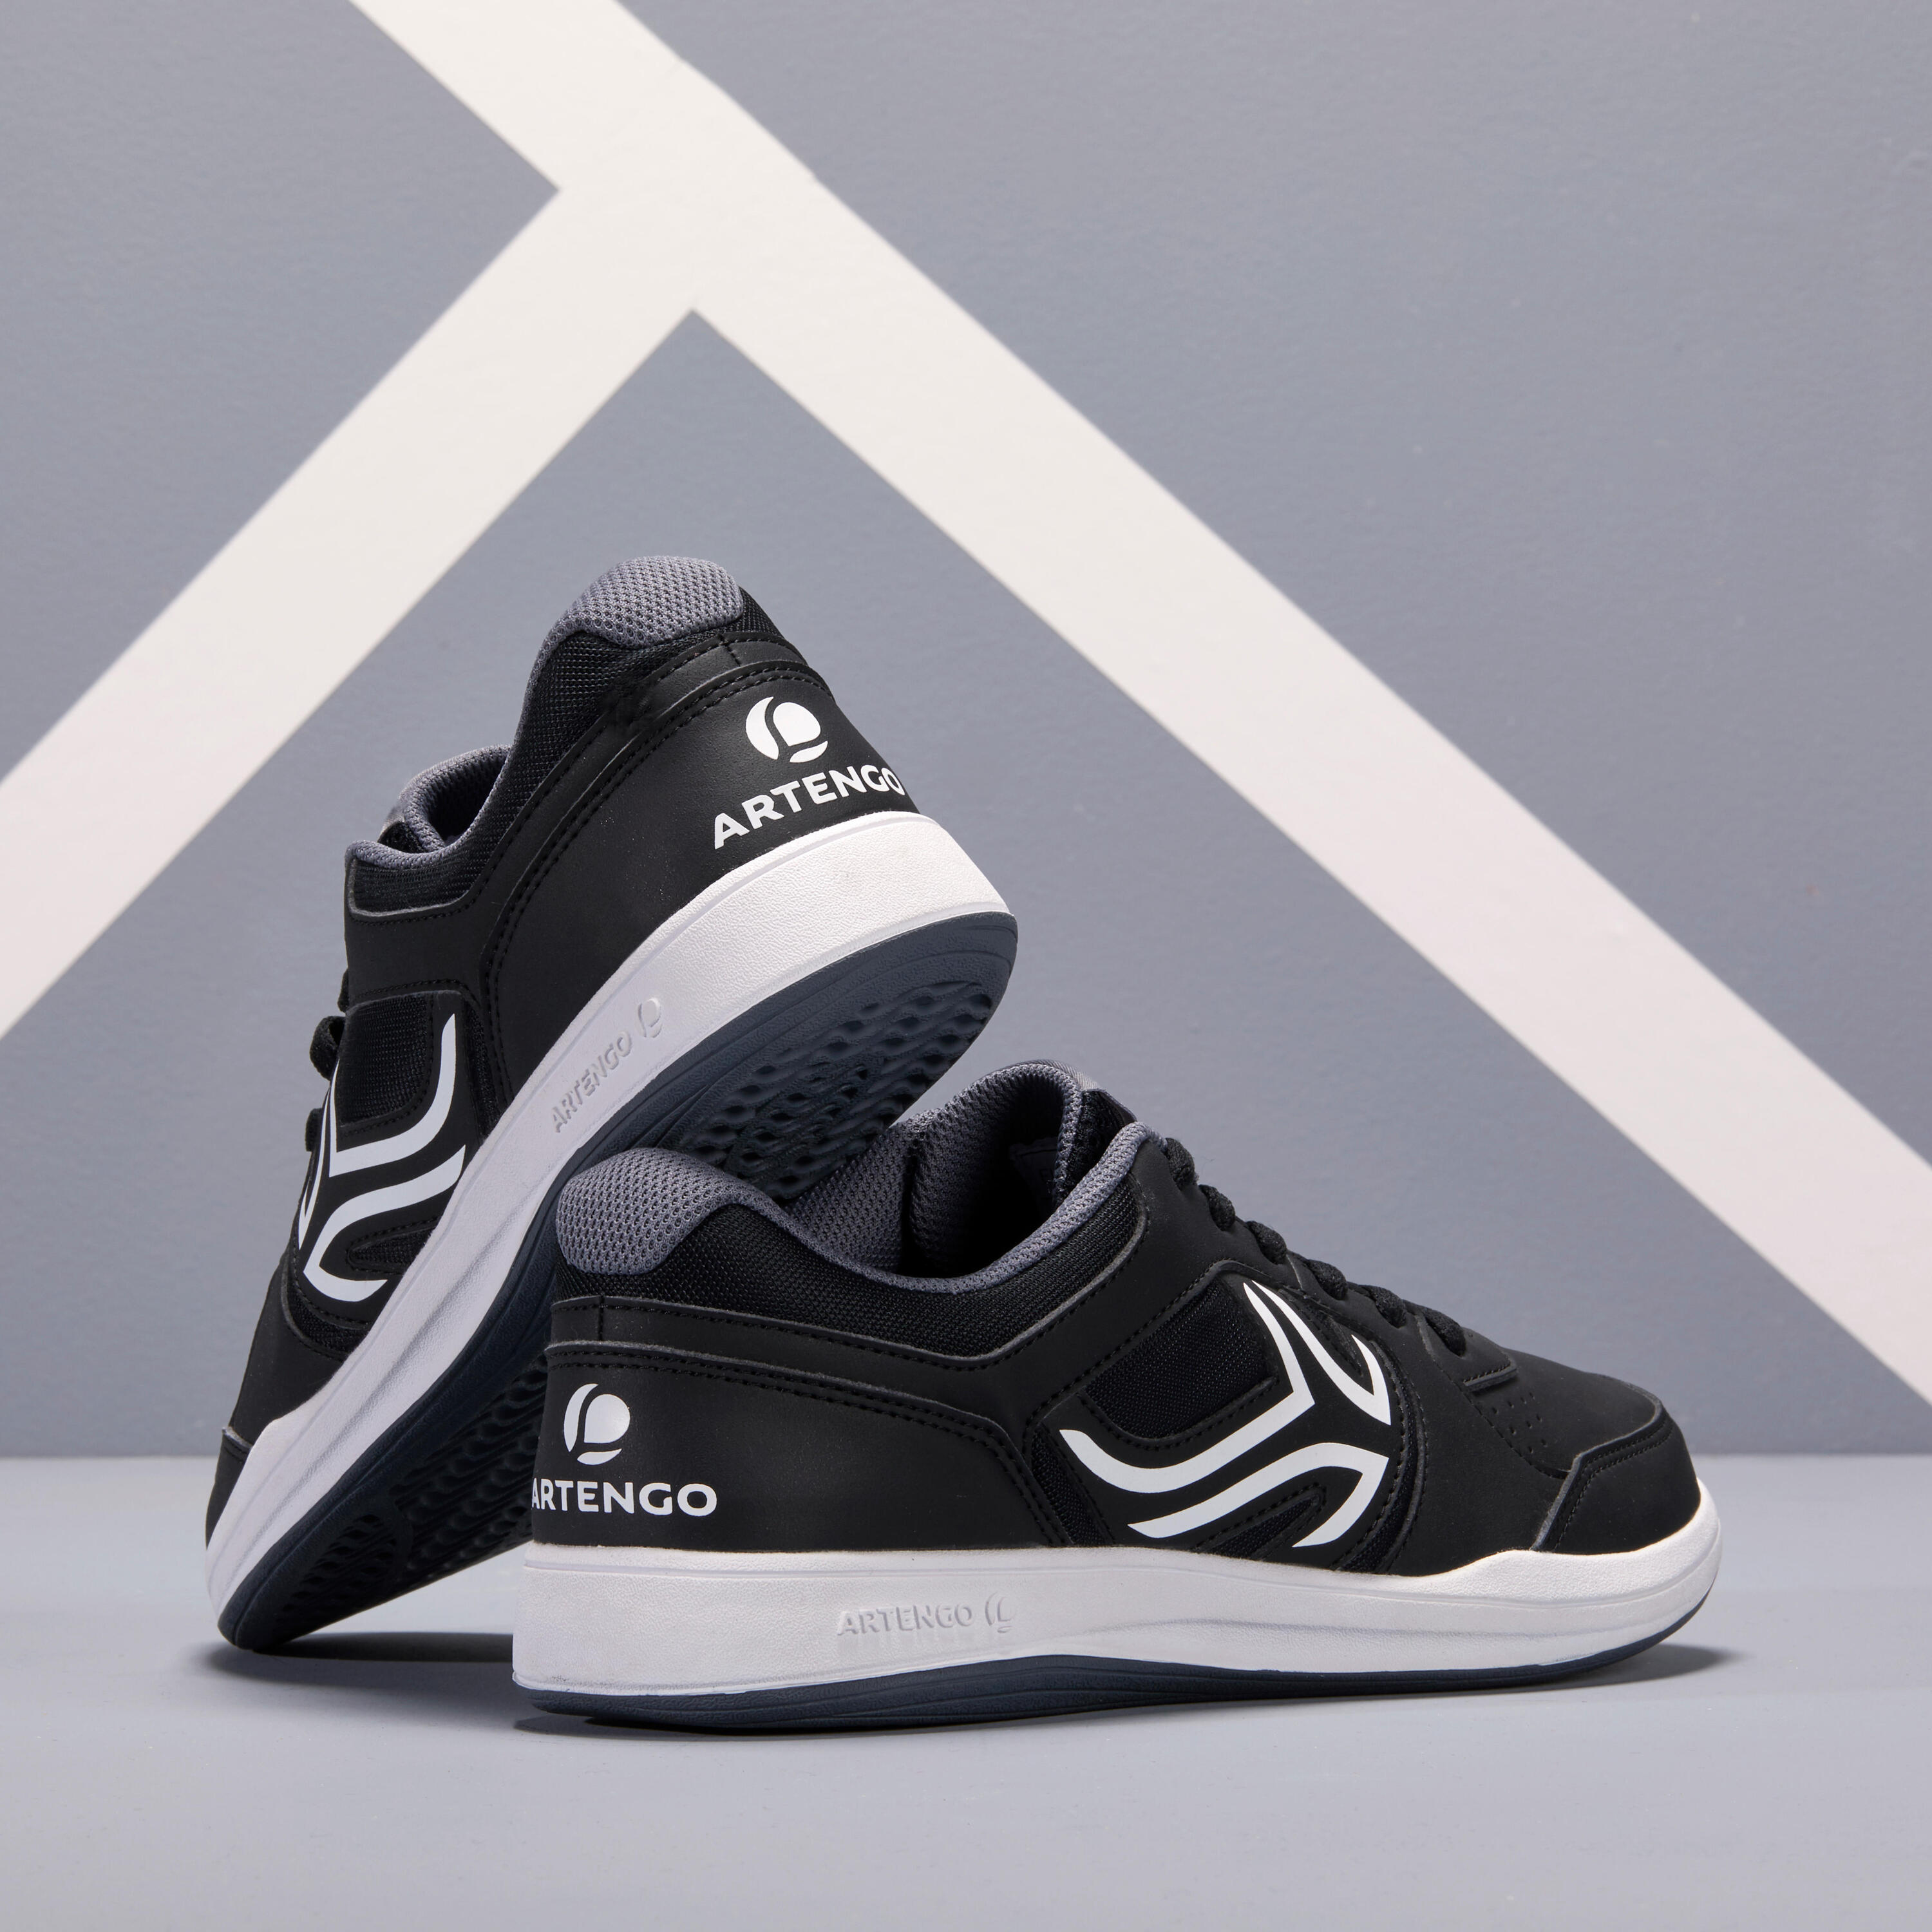 TS130 Multicourt Tennis Shoes - Black 4/9